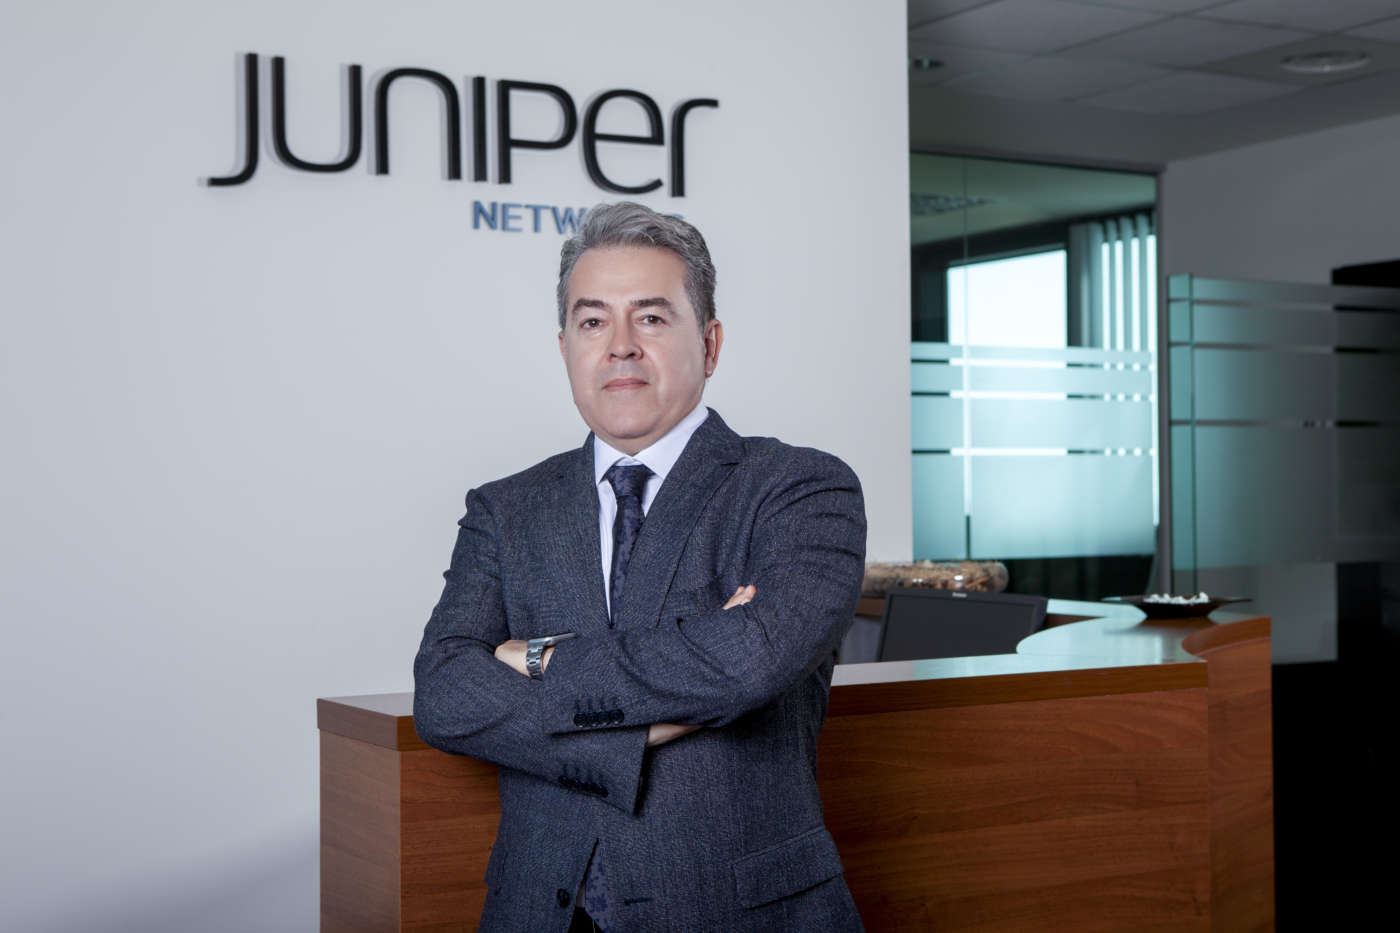 Mario Manfredoni, country manager Italia di Juniper Networks